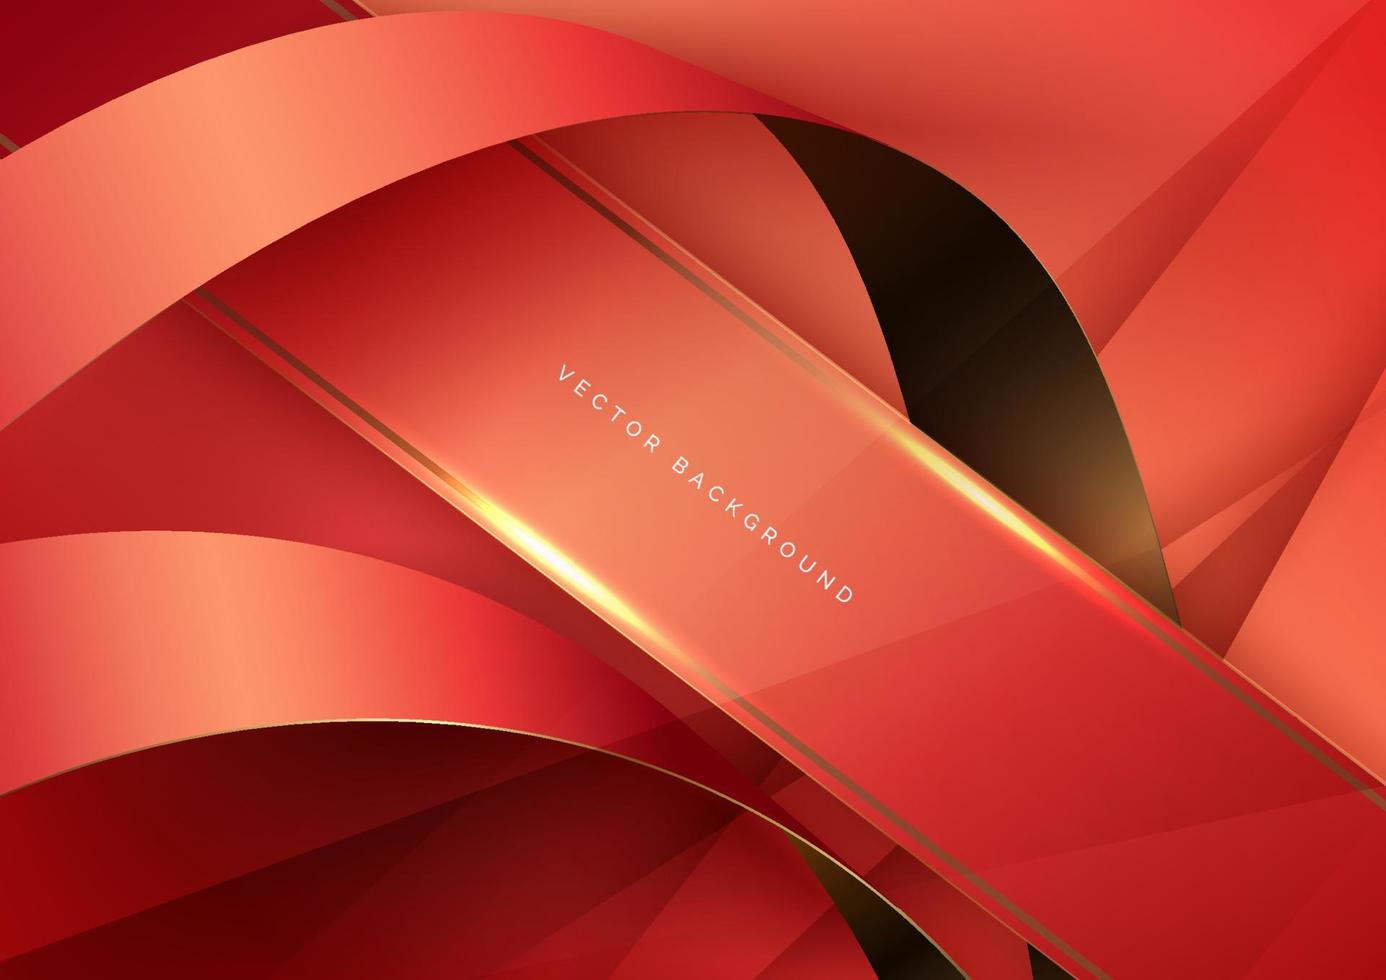 cinta roja y dorada curva 3d abstracta sobre fondo rojo con espacio de copia de efecto de iluminación para texto. estilo de diseño de lujo. vector